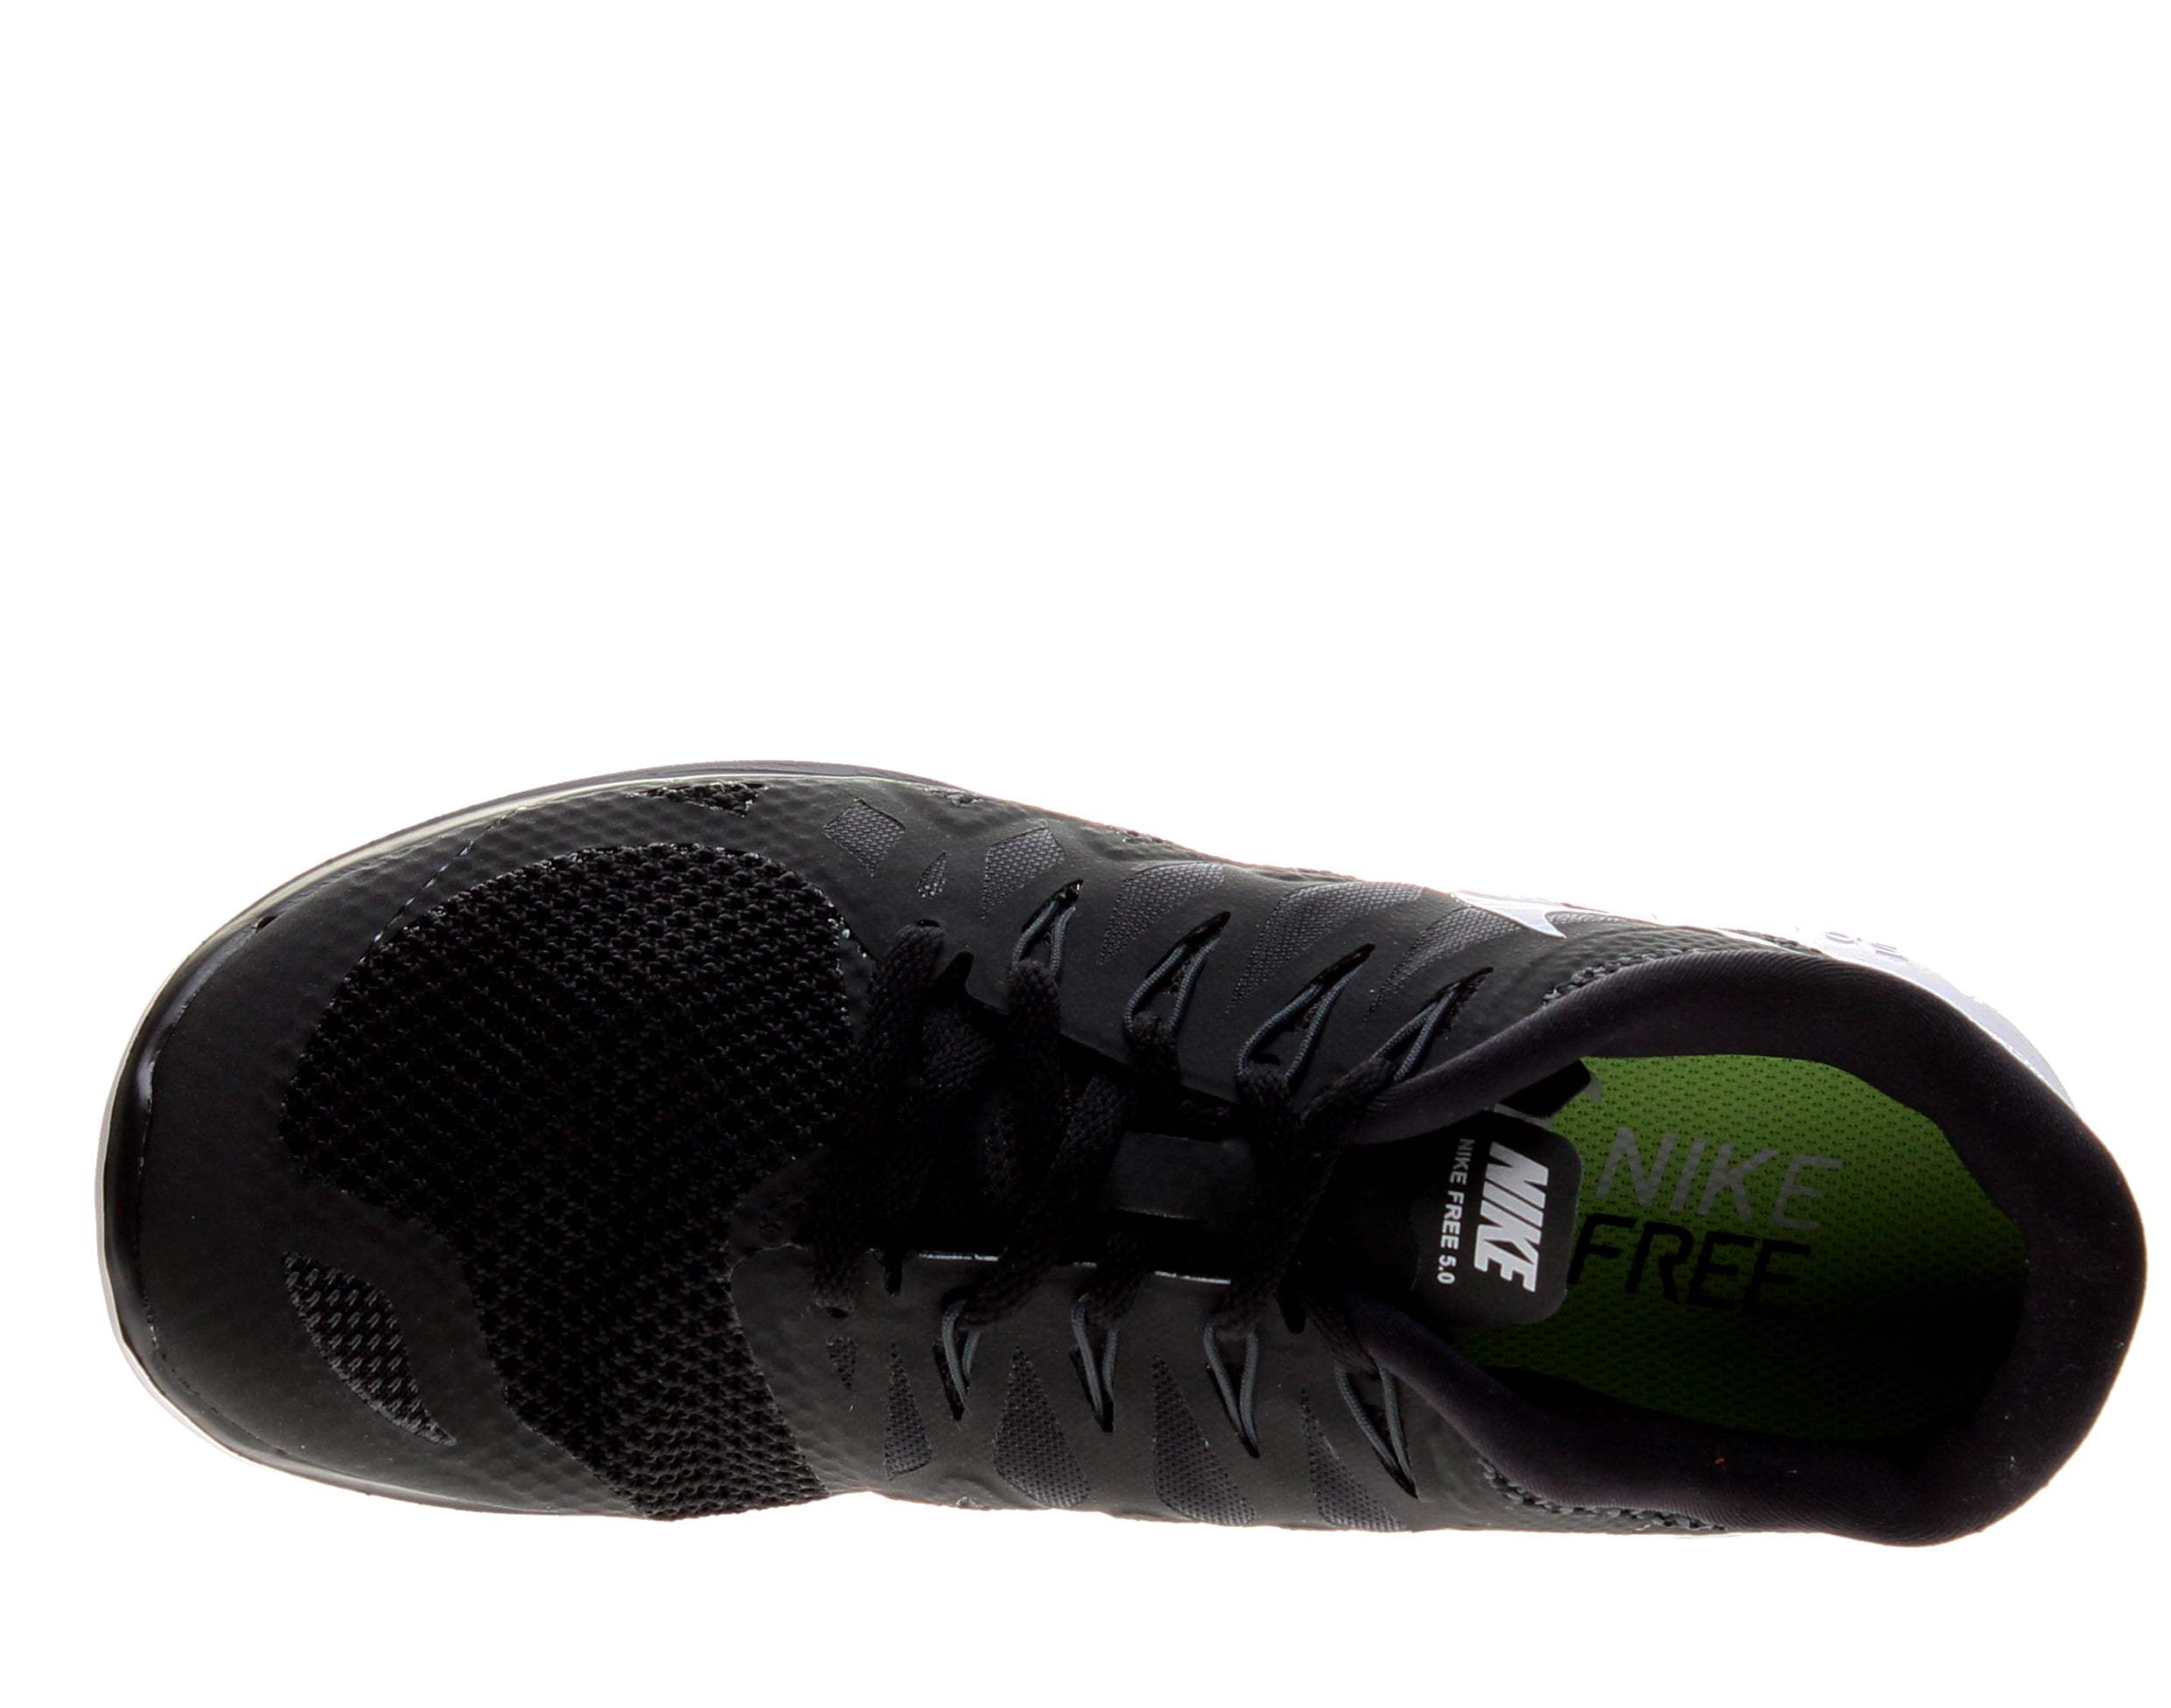 Støvet Snor græsplæne Nike Men's Free 5.0 Black/White/Anthracite Running Shoes - Walmart.com